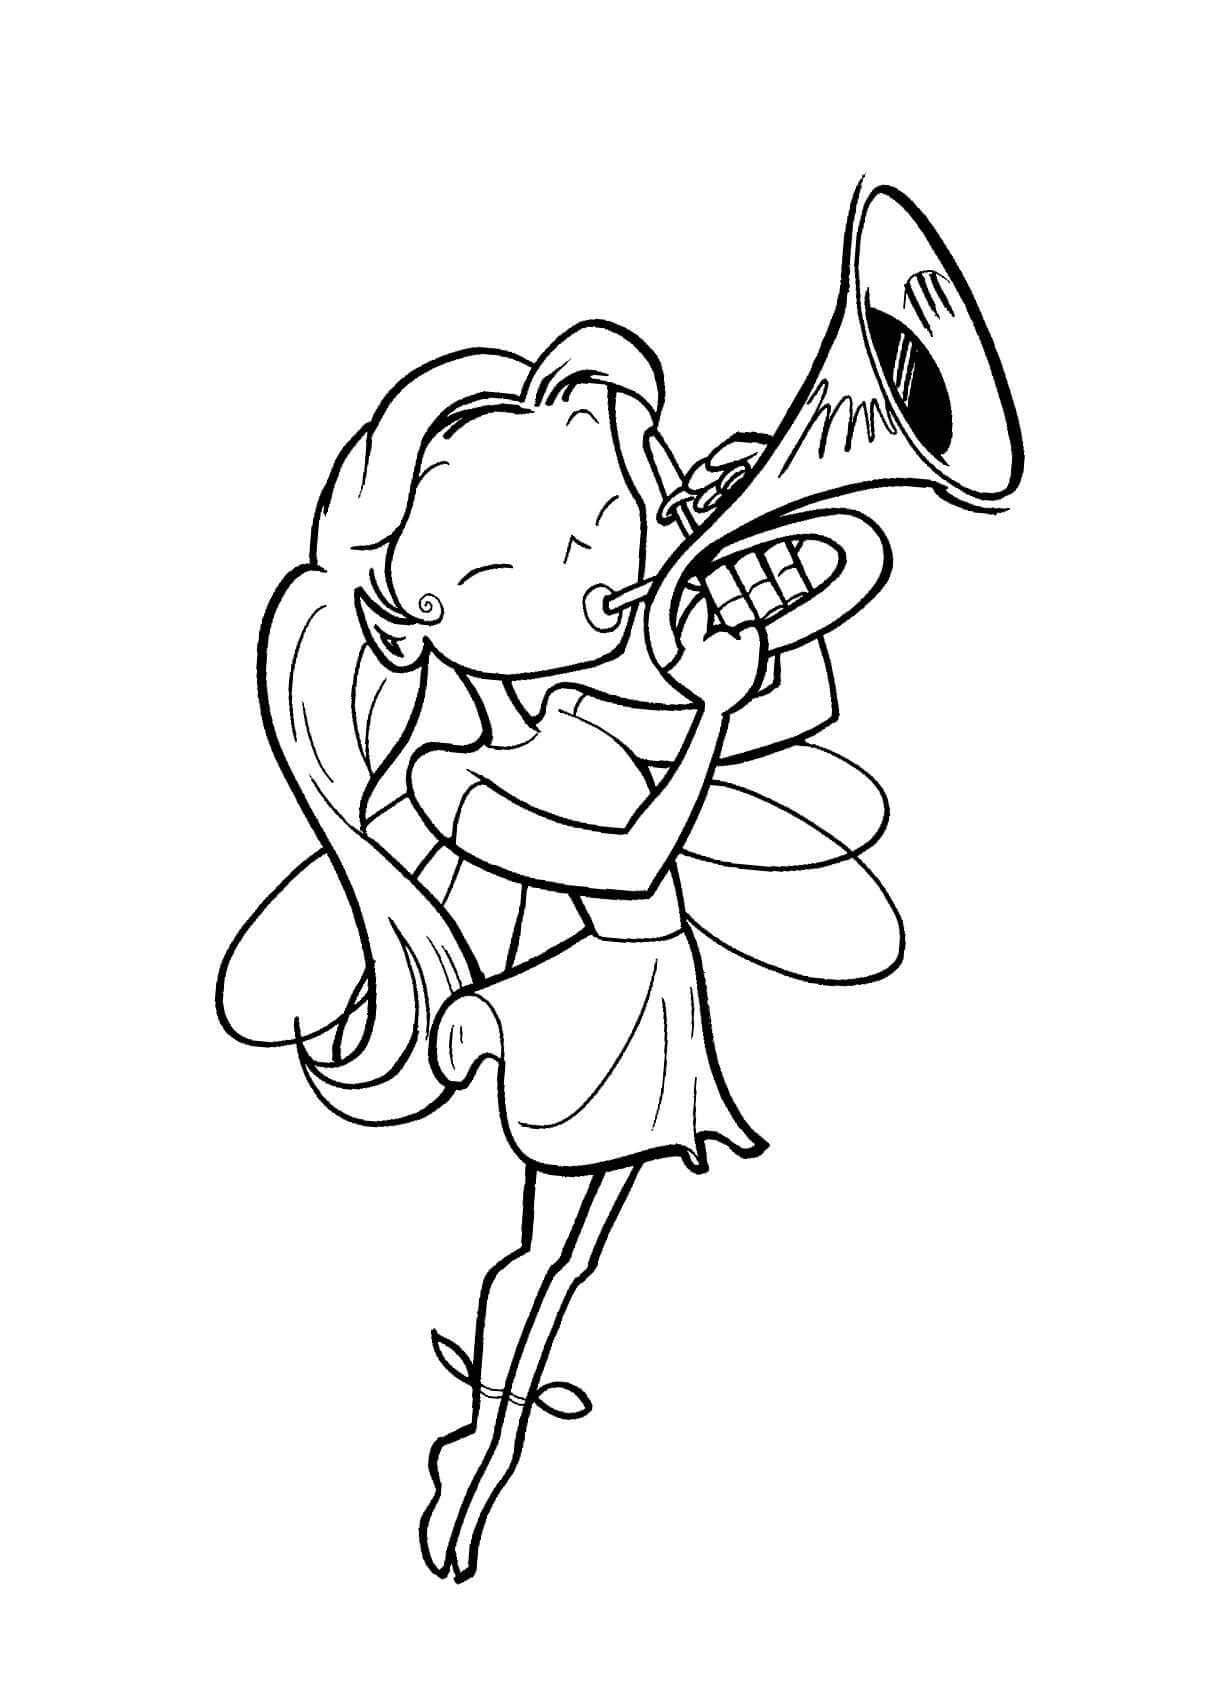 Une Fée Joue de La Trompette coloring page